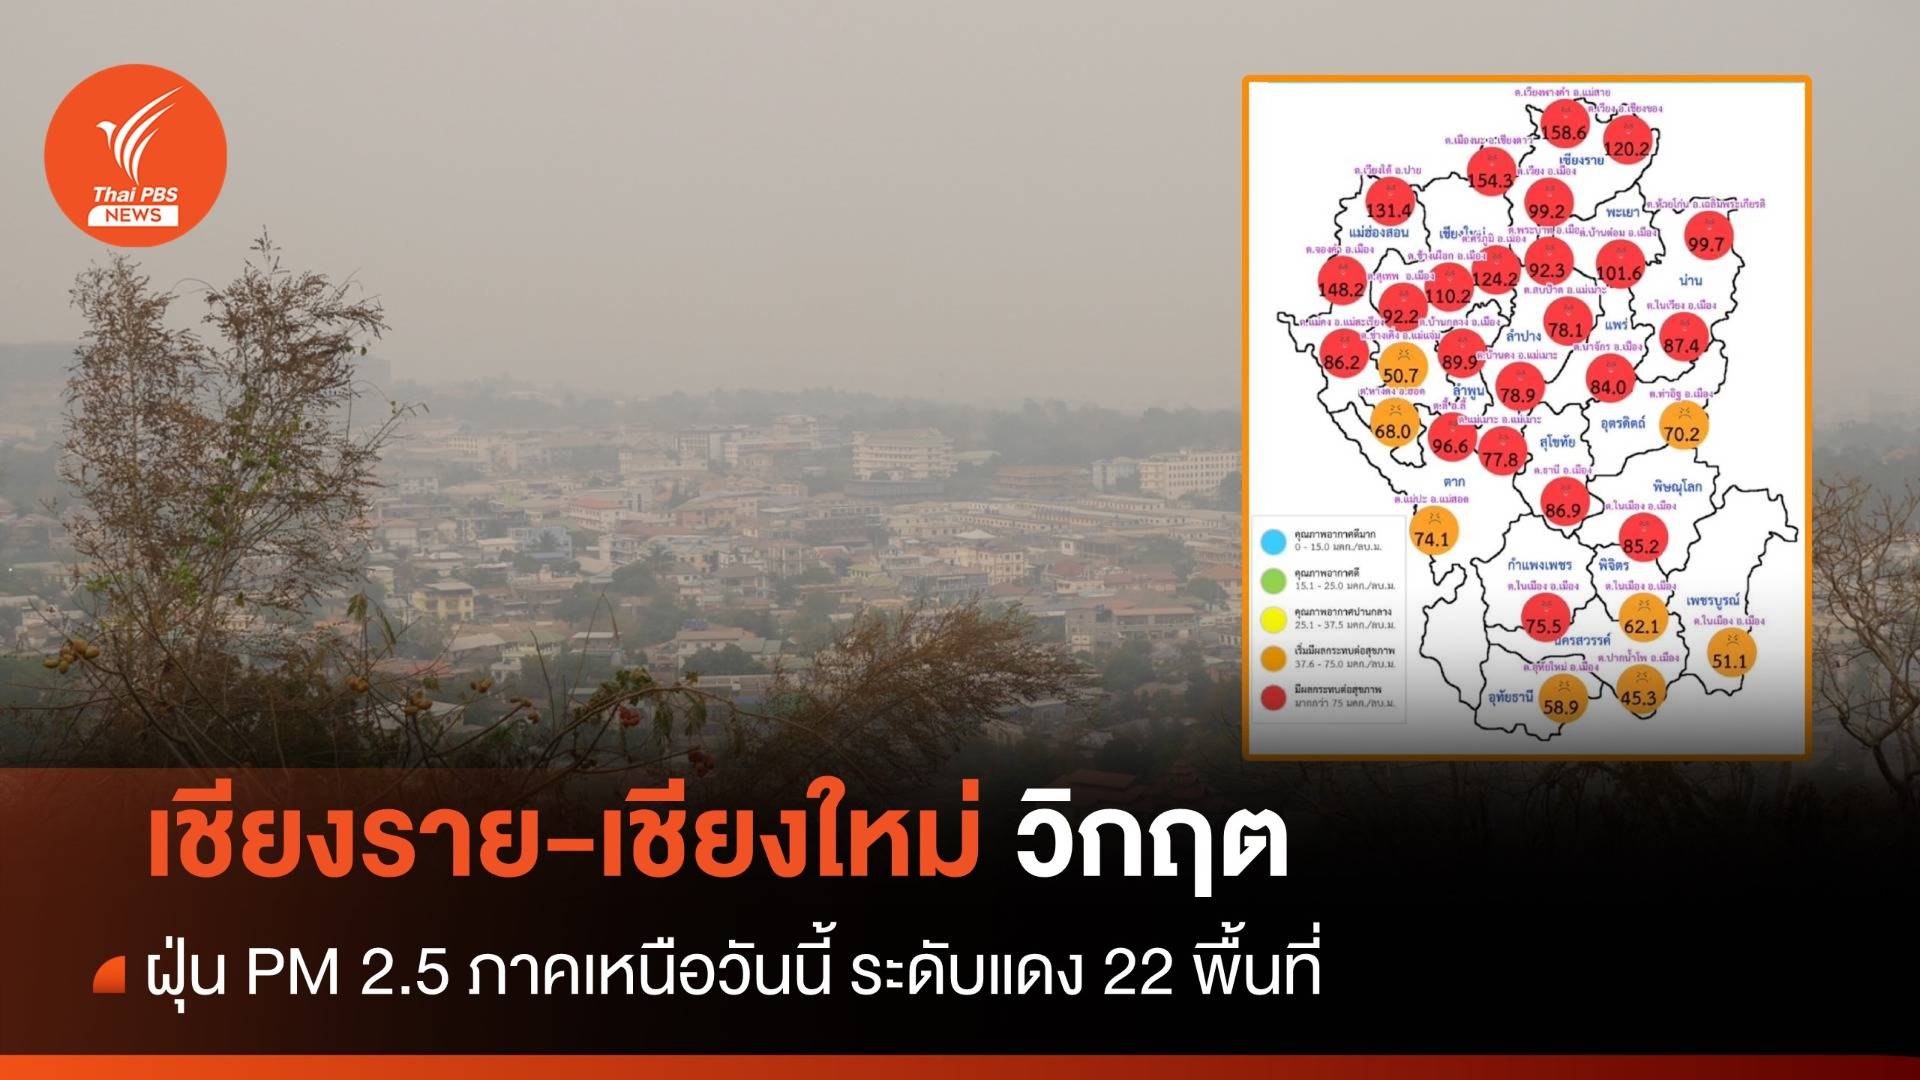 ฝุ่น PM 2.5 ภาคเหนือ ระดับแดง 22 พื้นที่ เชียงราย-เชียงใหม่ อ่วม